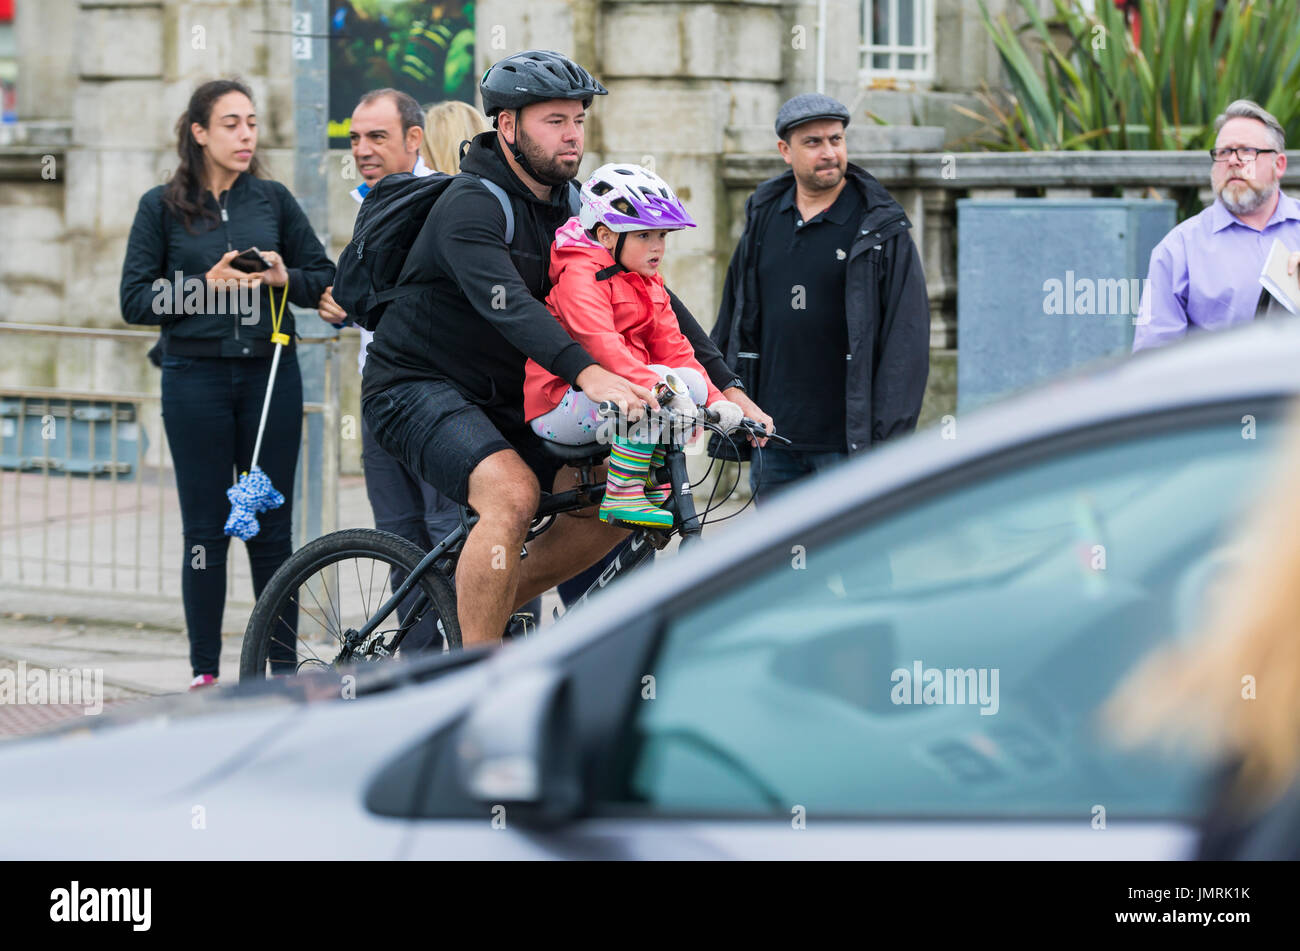 Ciclista con un niño en una carretera muy transitada. Hombre y niño en una bicicleta con cascos. Foto de stock